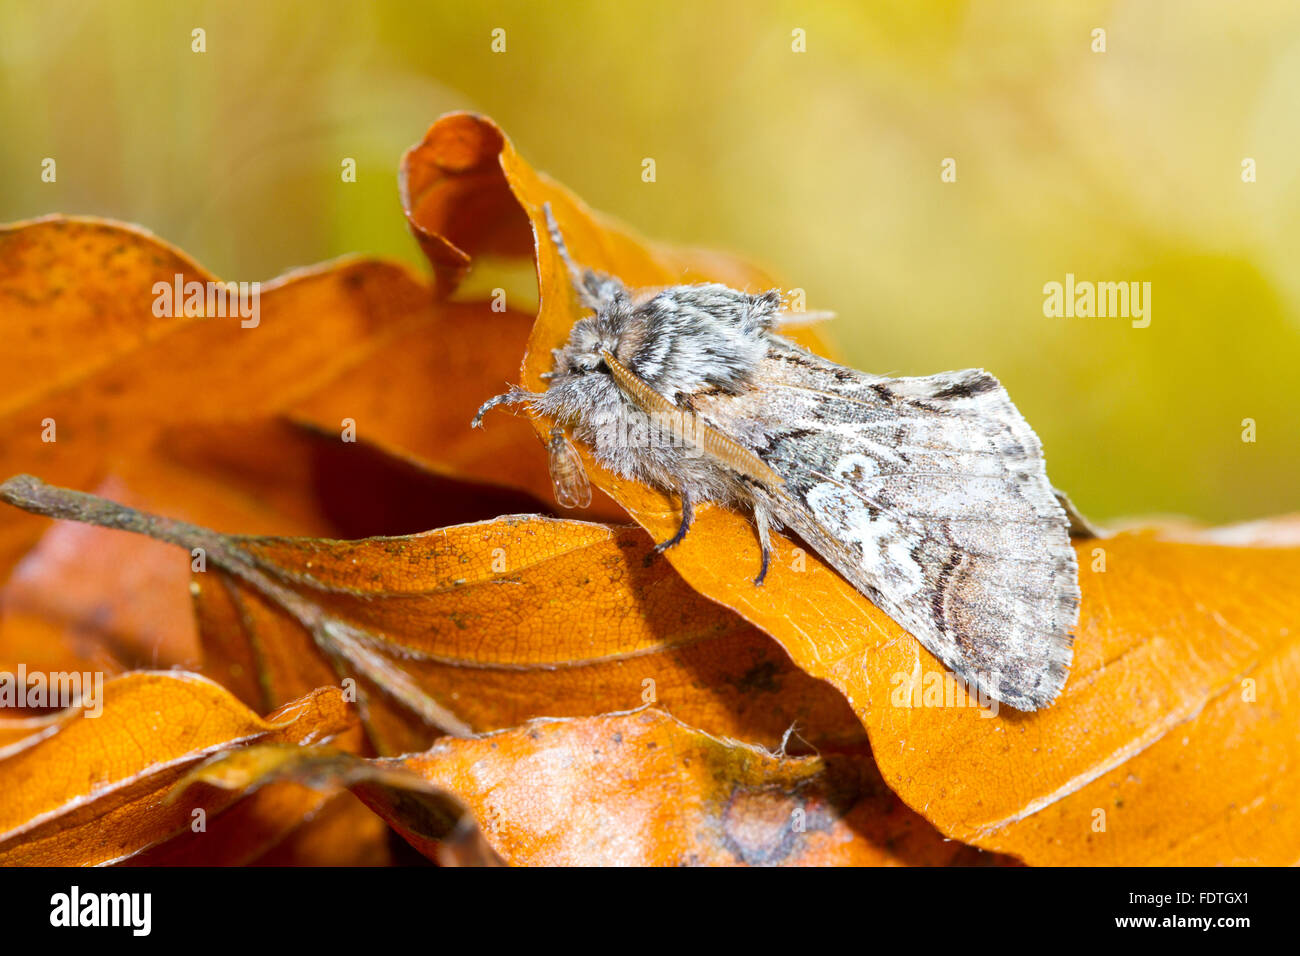 La figura de ocho (Diloba caeruleocephala) polilla adulta descansando entre las hojas caídas en otoño. Powys, Gales. De octubre. Foto de stock